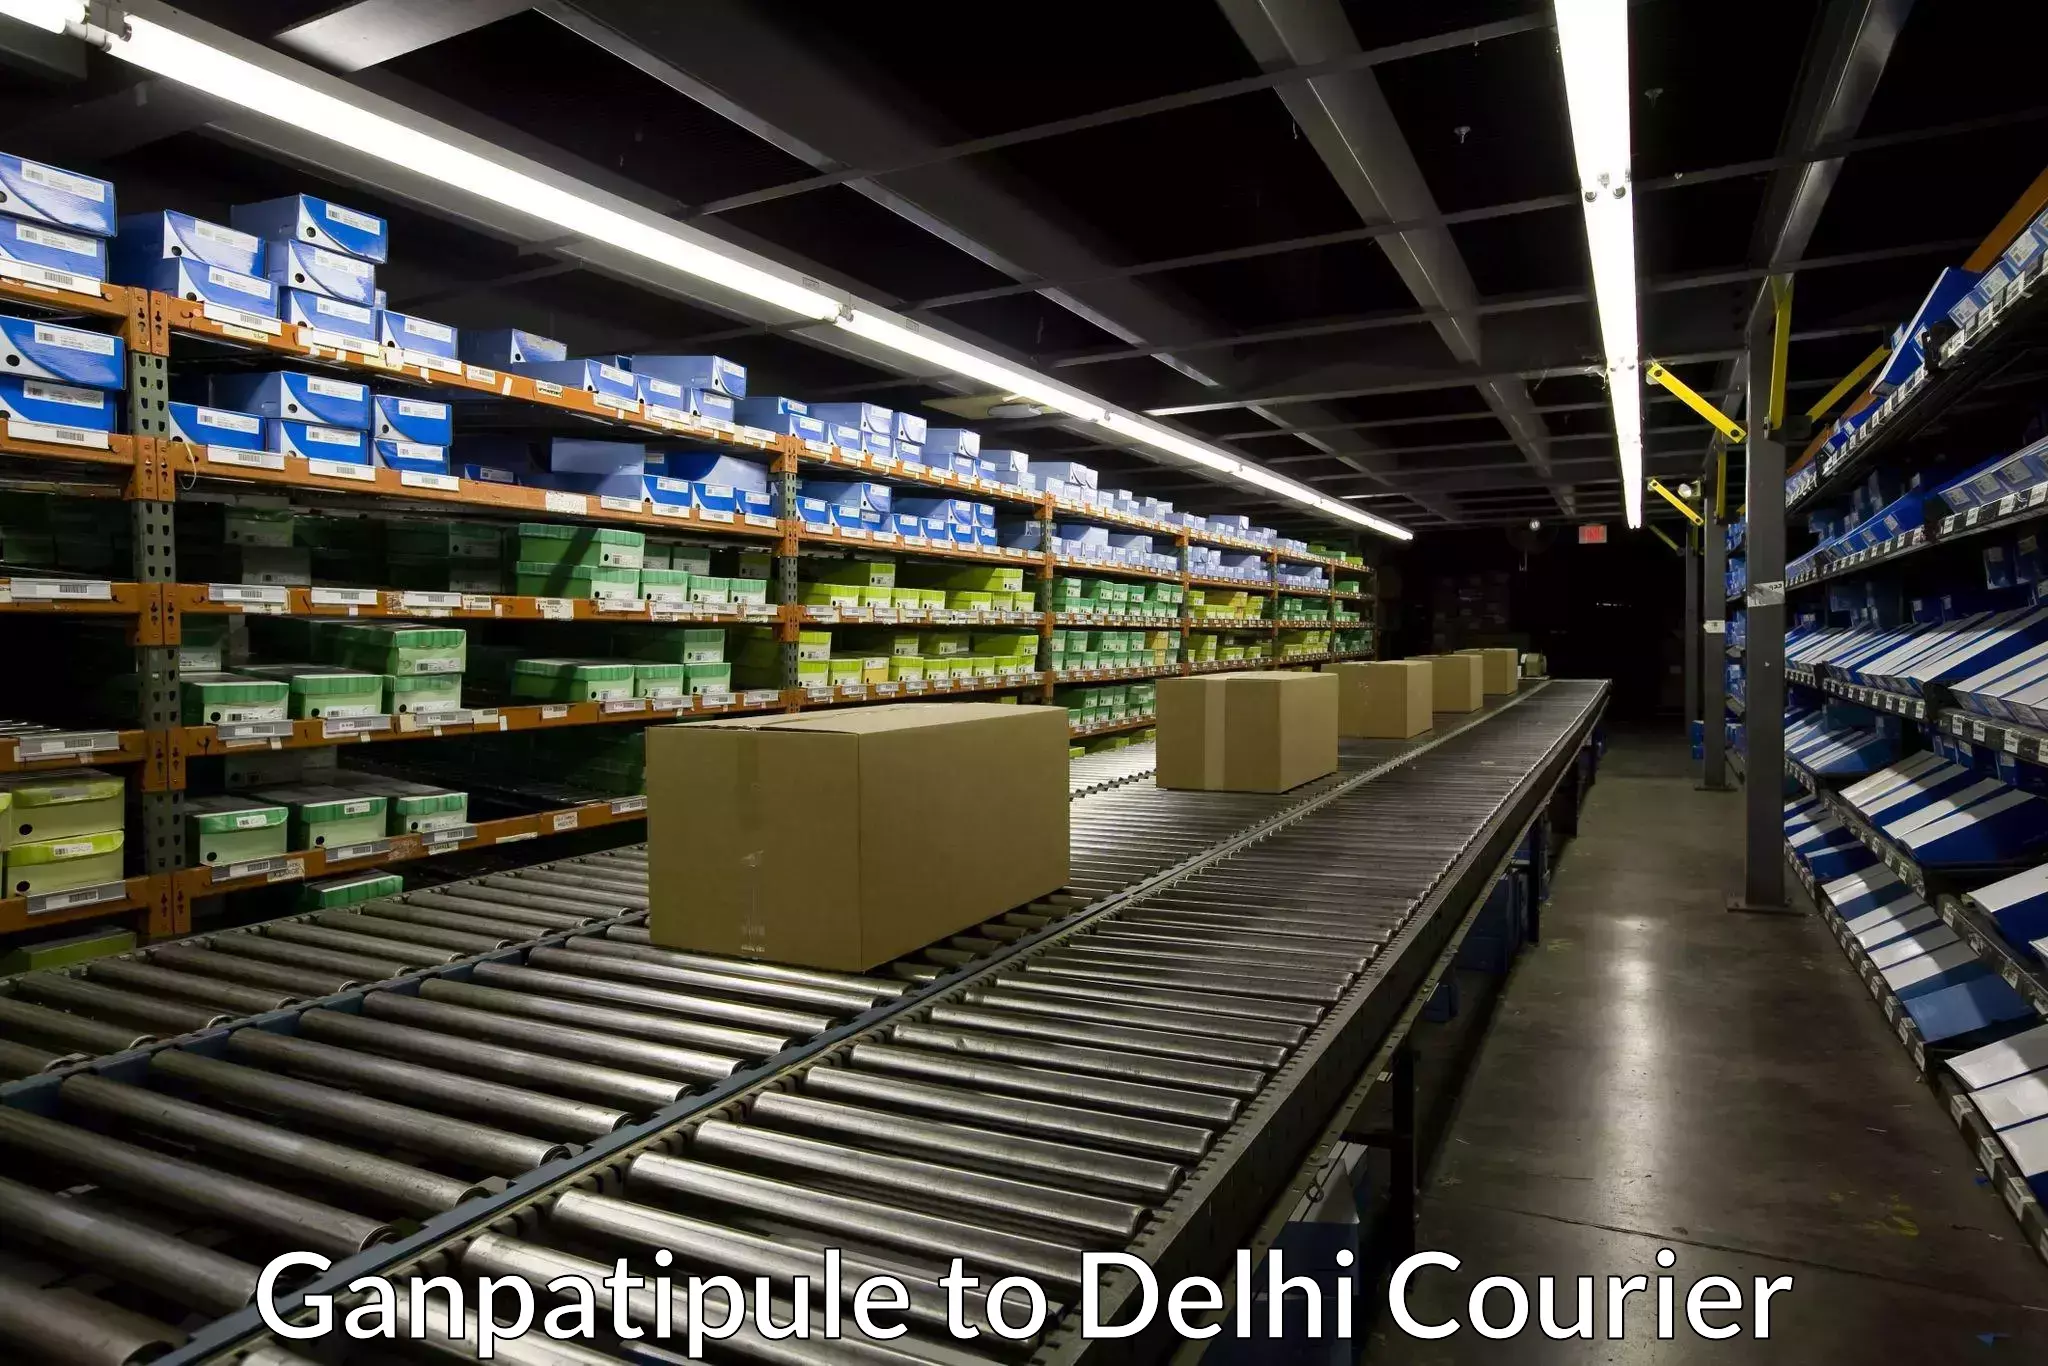 Express logistics service Ganpatipule to Delhi